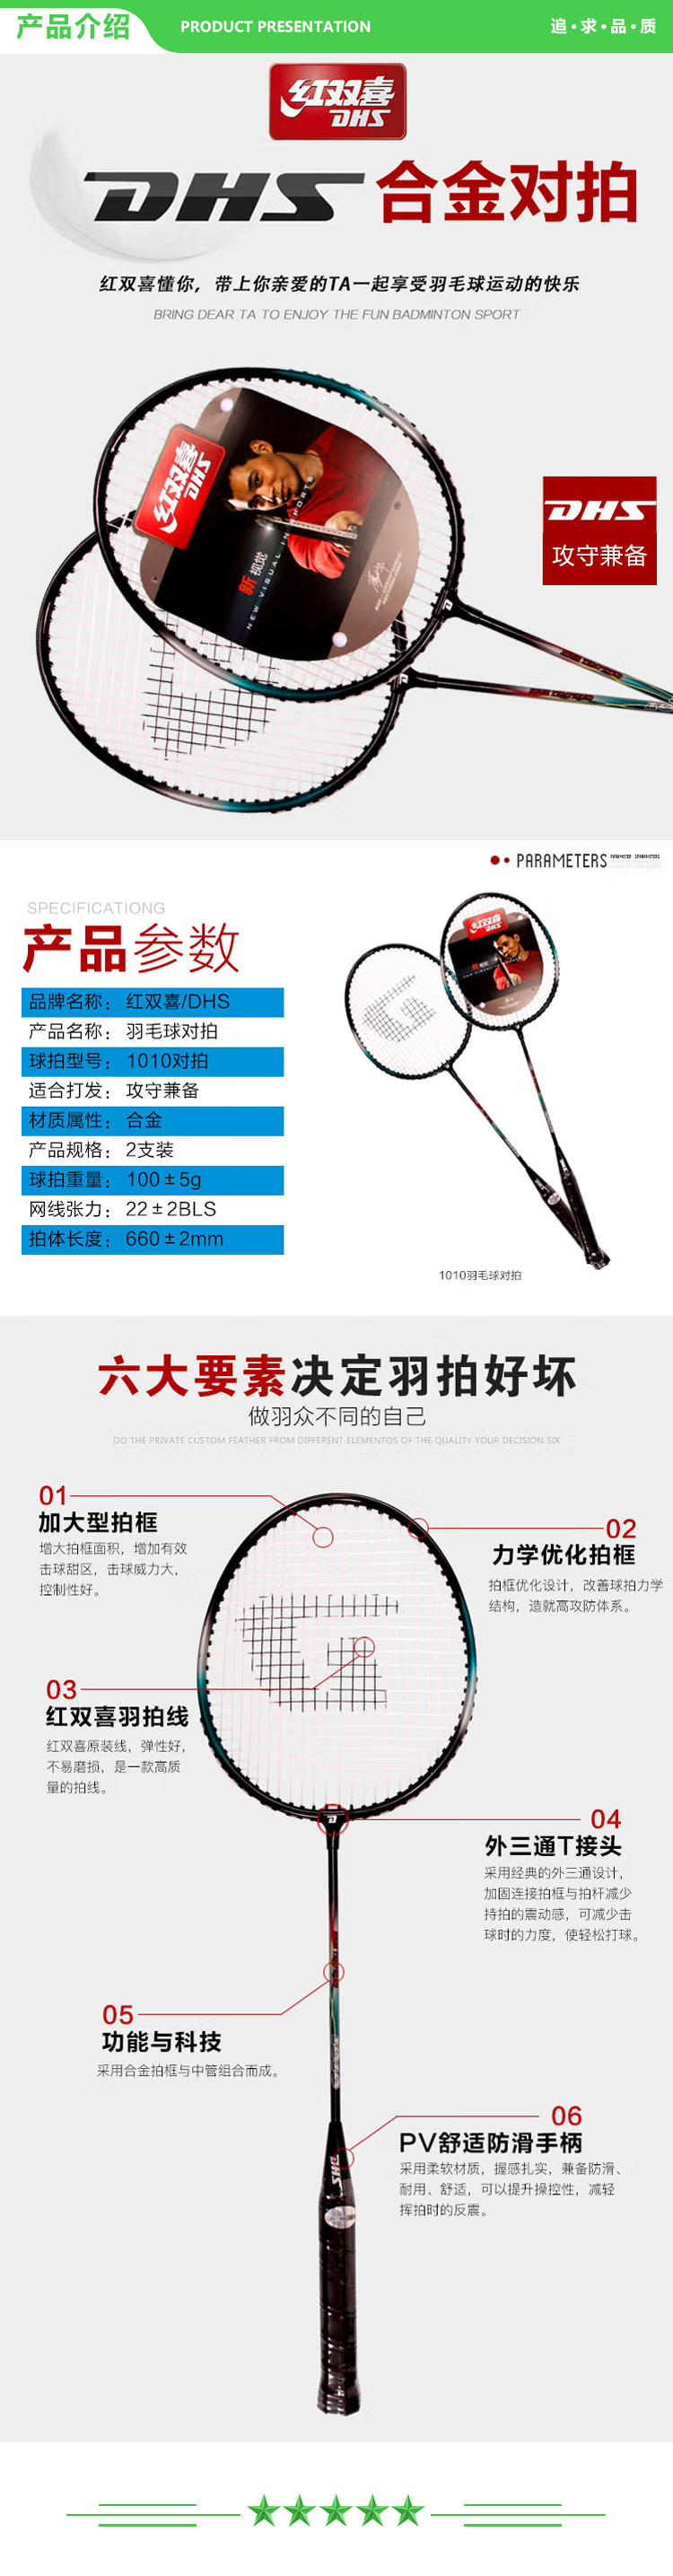 红双喜 DHS 1010 羽毛球拍对拍合金羽拍(新老包装随机)  (2).jpg